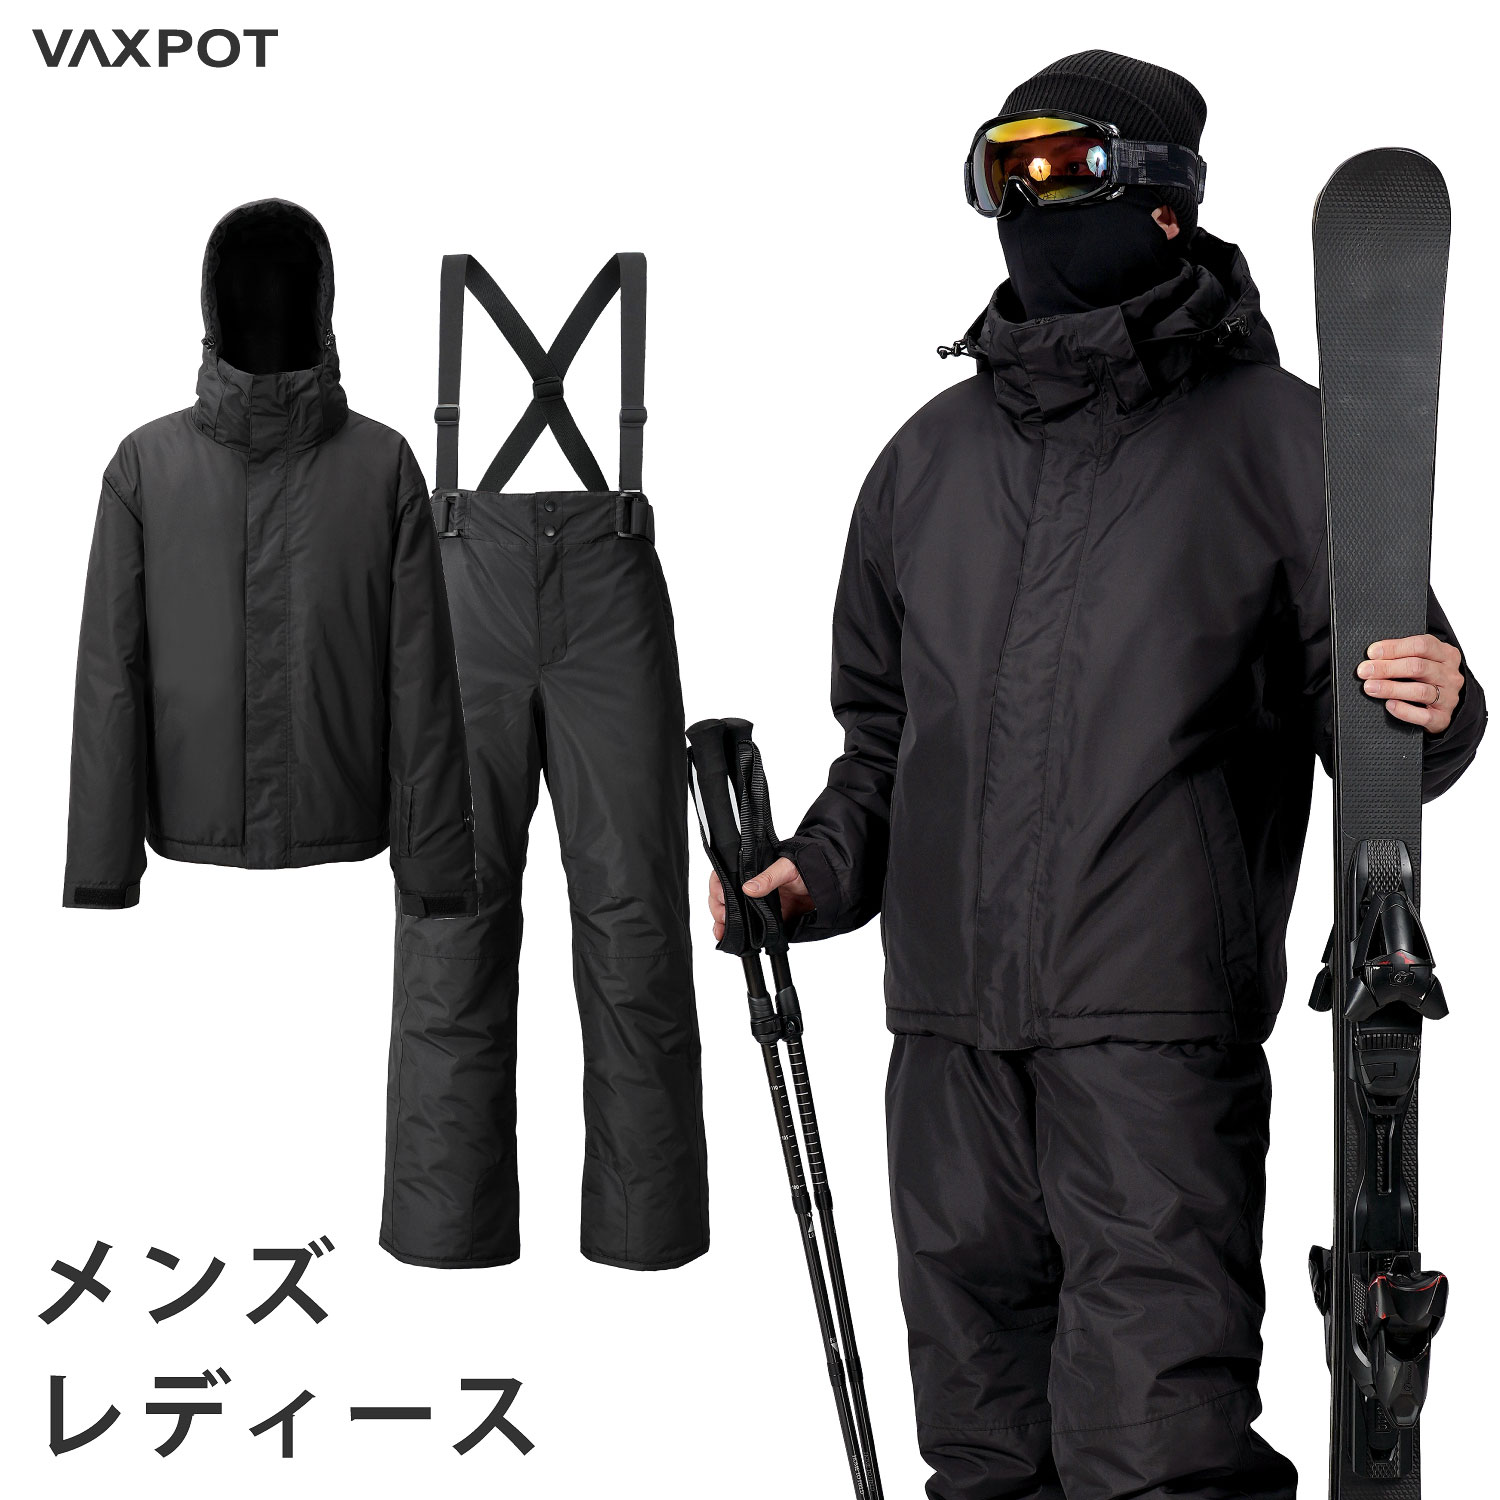 【送料無料】スキーウェア レディース メンズ 上下セット VAXPOT バックスポット スキー ウェア 上下 セット VA-2016【耐水圧 5000mm 撥水加工 透湿 3000g ジャケット パンツ 男性用 女性用】…